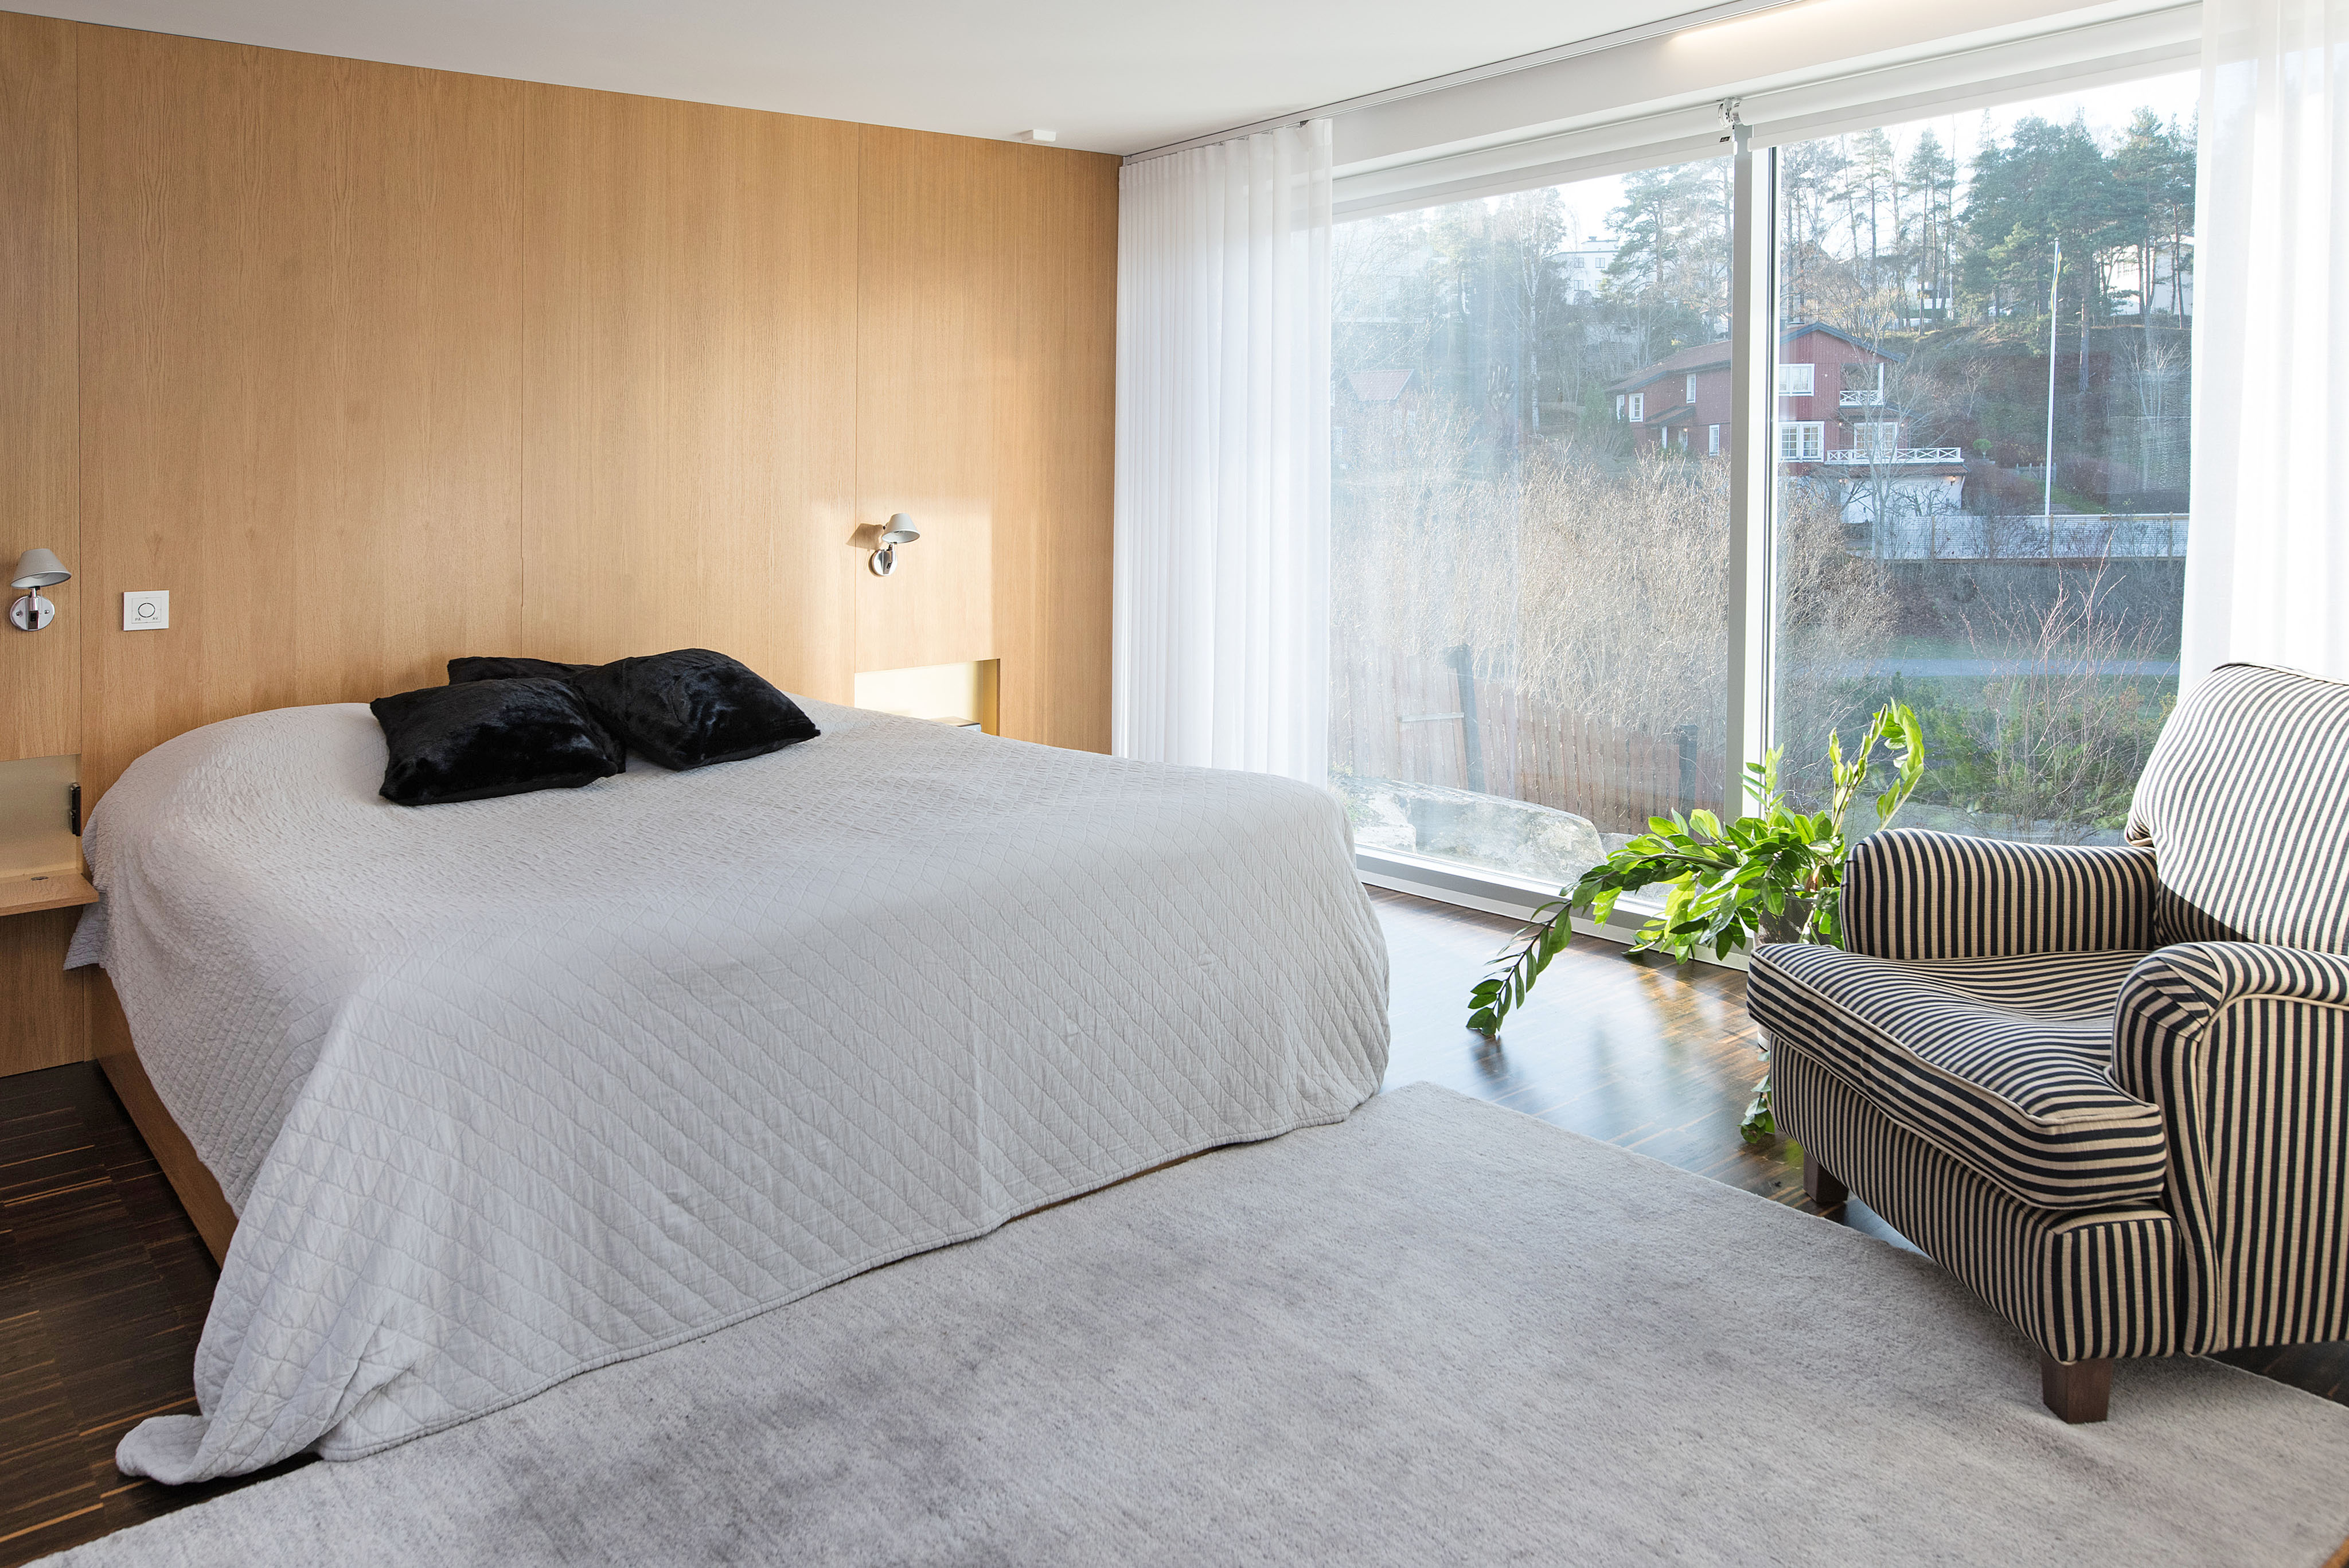 När du letar fastighetsmäklare i Stockholm kontakta Skeppsholmen Sotheby’s International Realty. De har allt från paradvåningar och slott till små häftiga lägenheter i rätt områden. Perfekt när du ska köpa bostad i Stockholm.